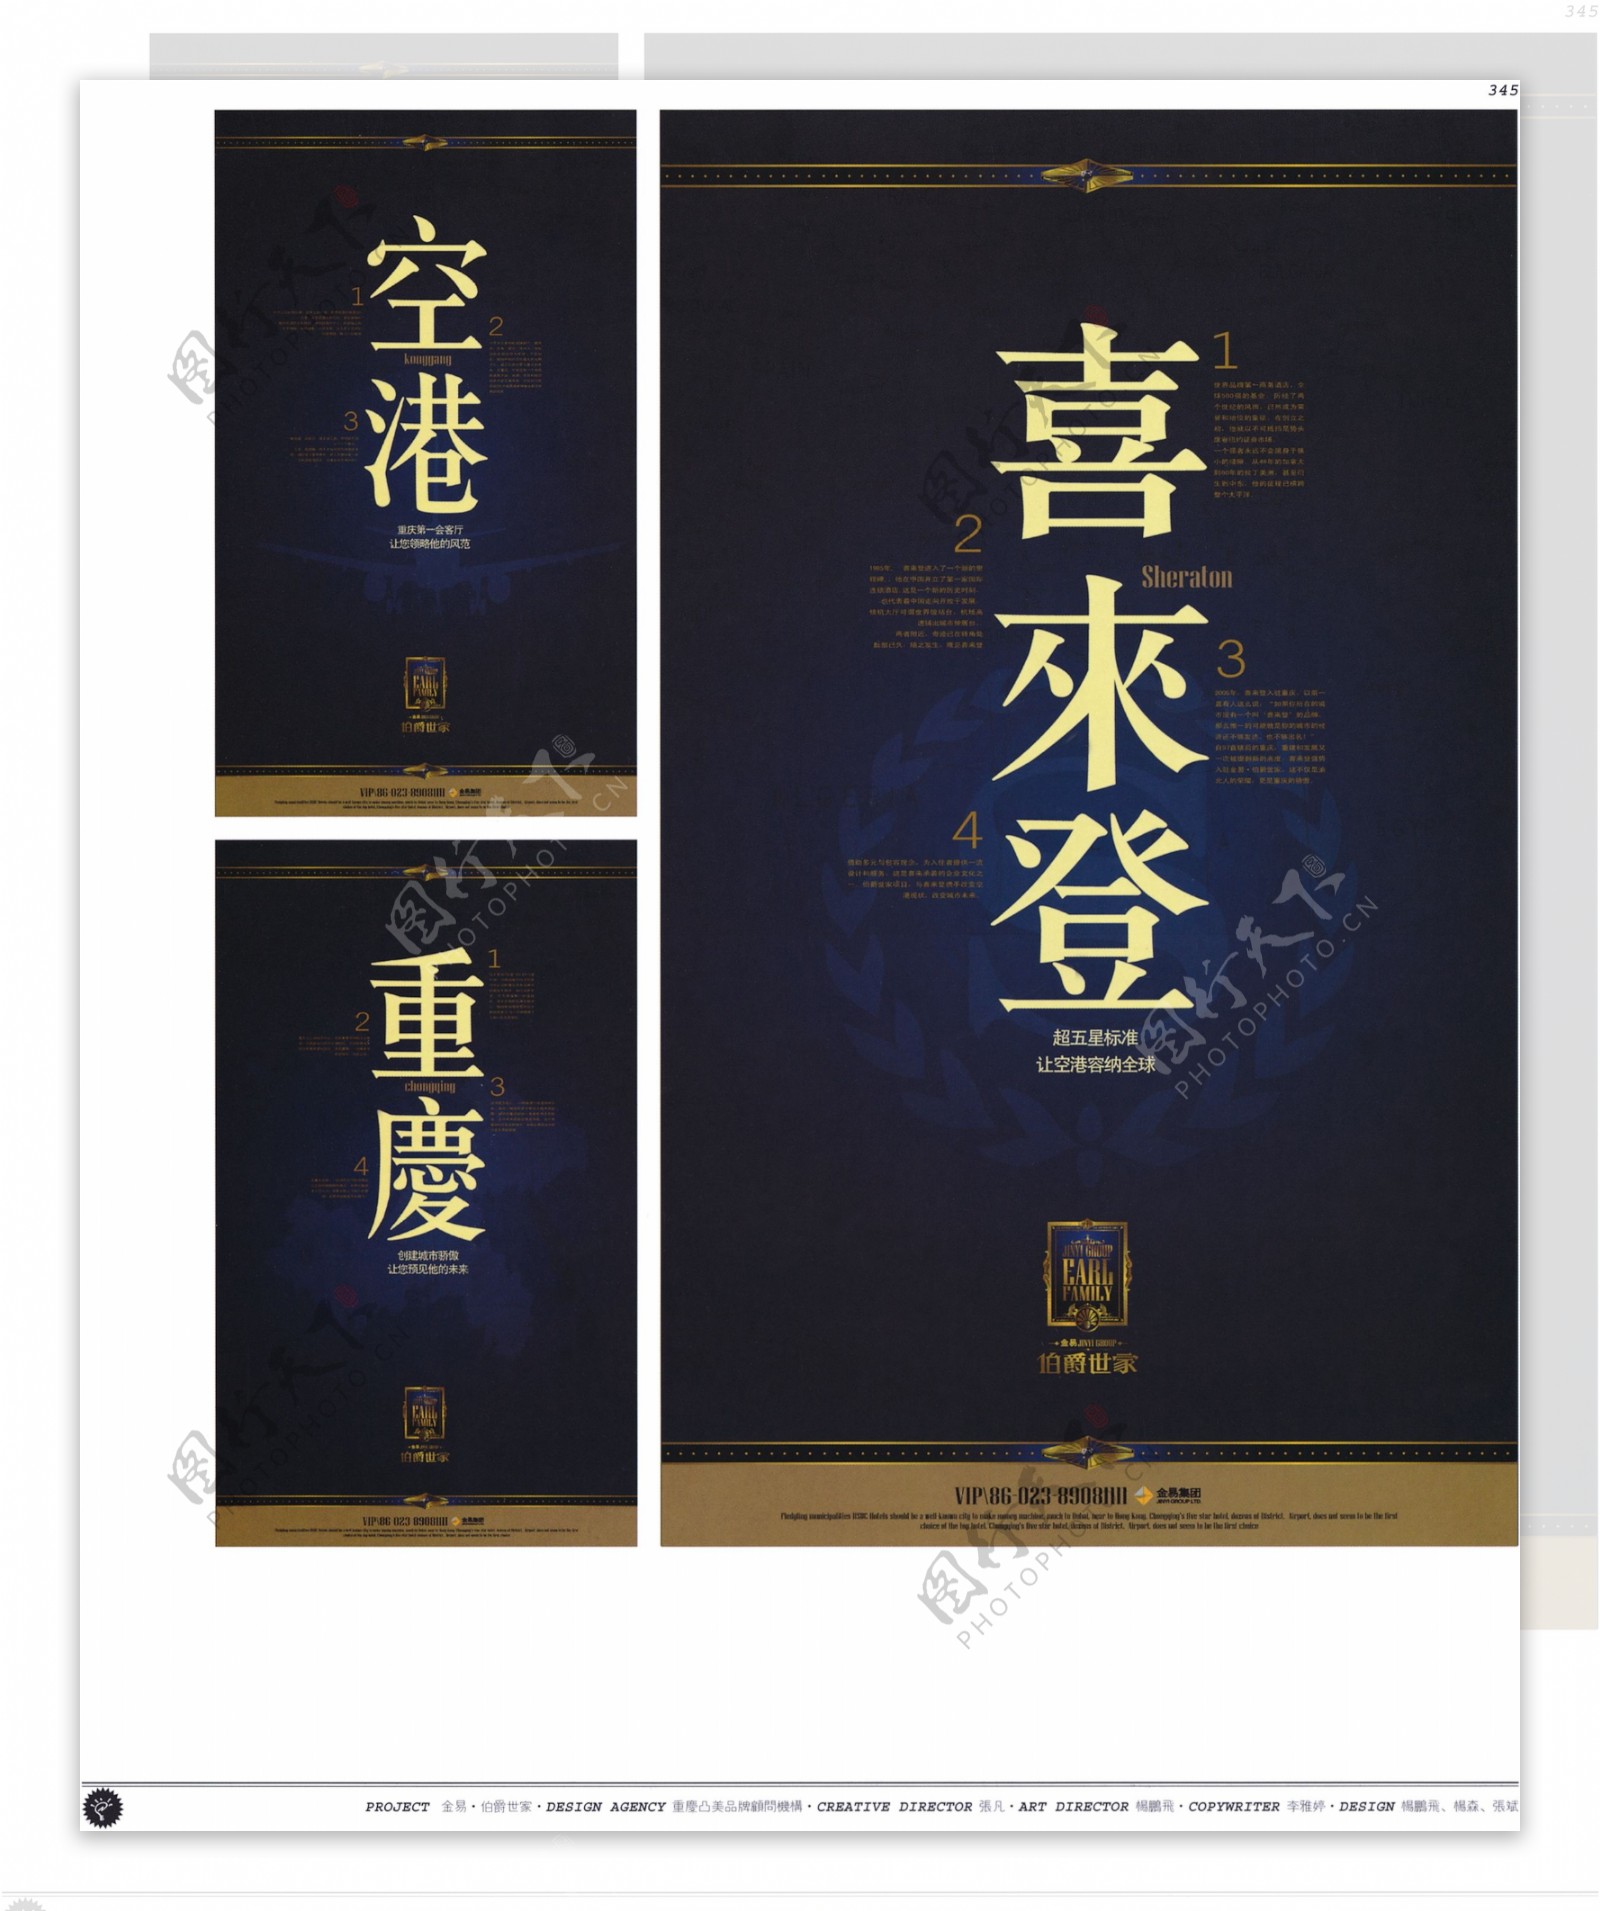 中国房地产广告年鉴第二册创意设计0339